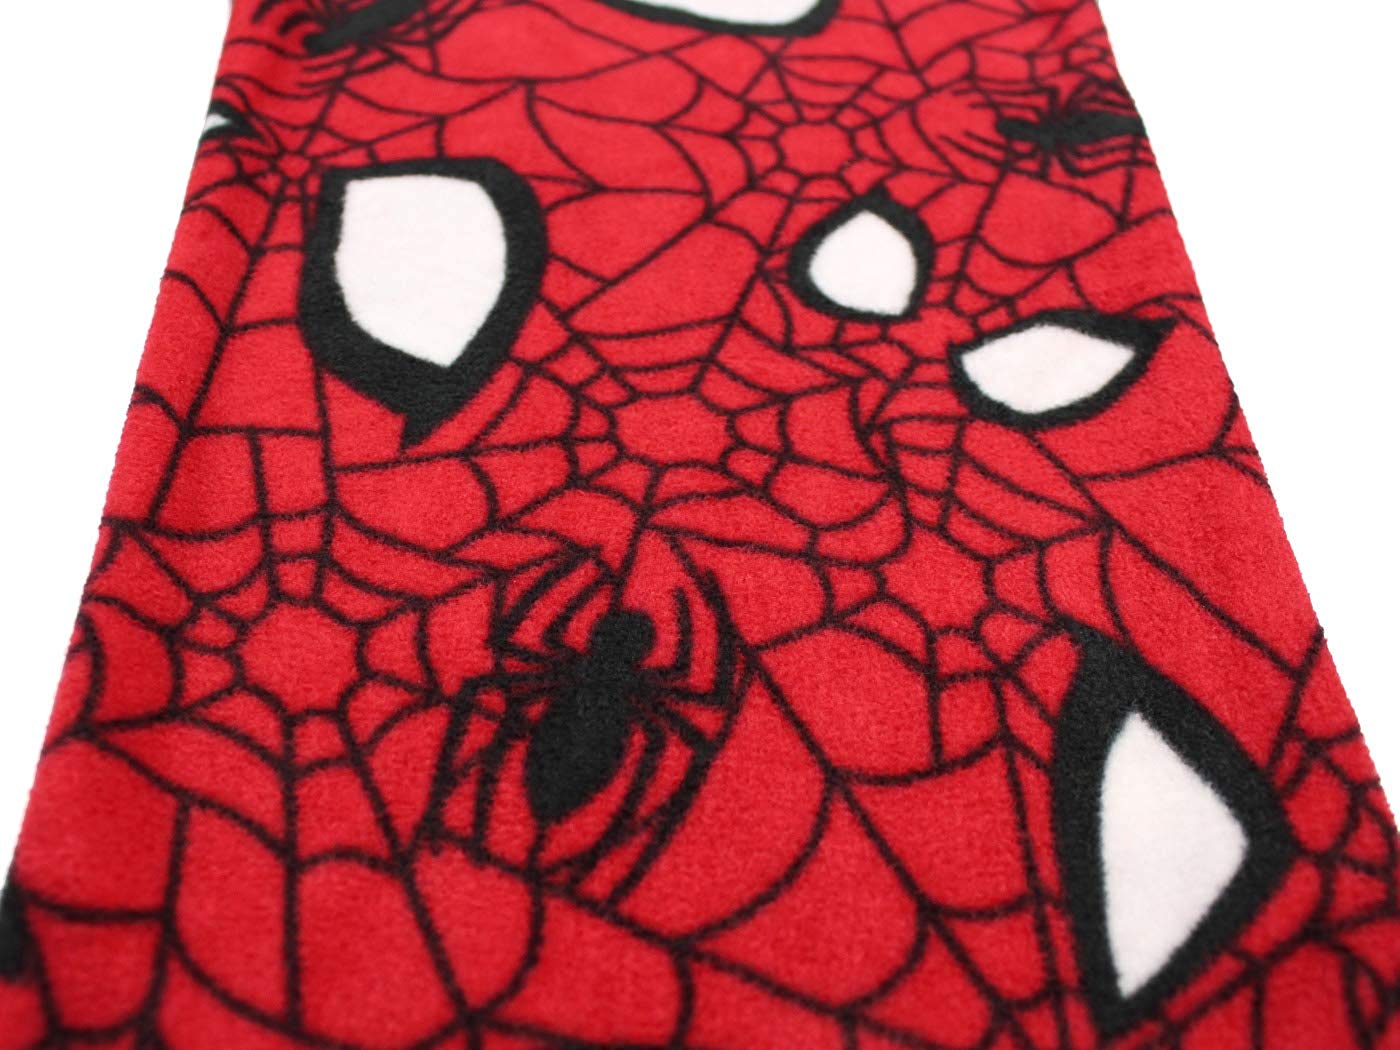 Marvel, Intimates & Sleepwear, Never Worn Marvel Brand Black And Red Spiderman  Underwear 2xl